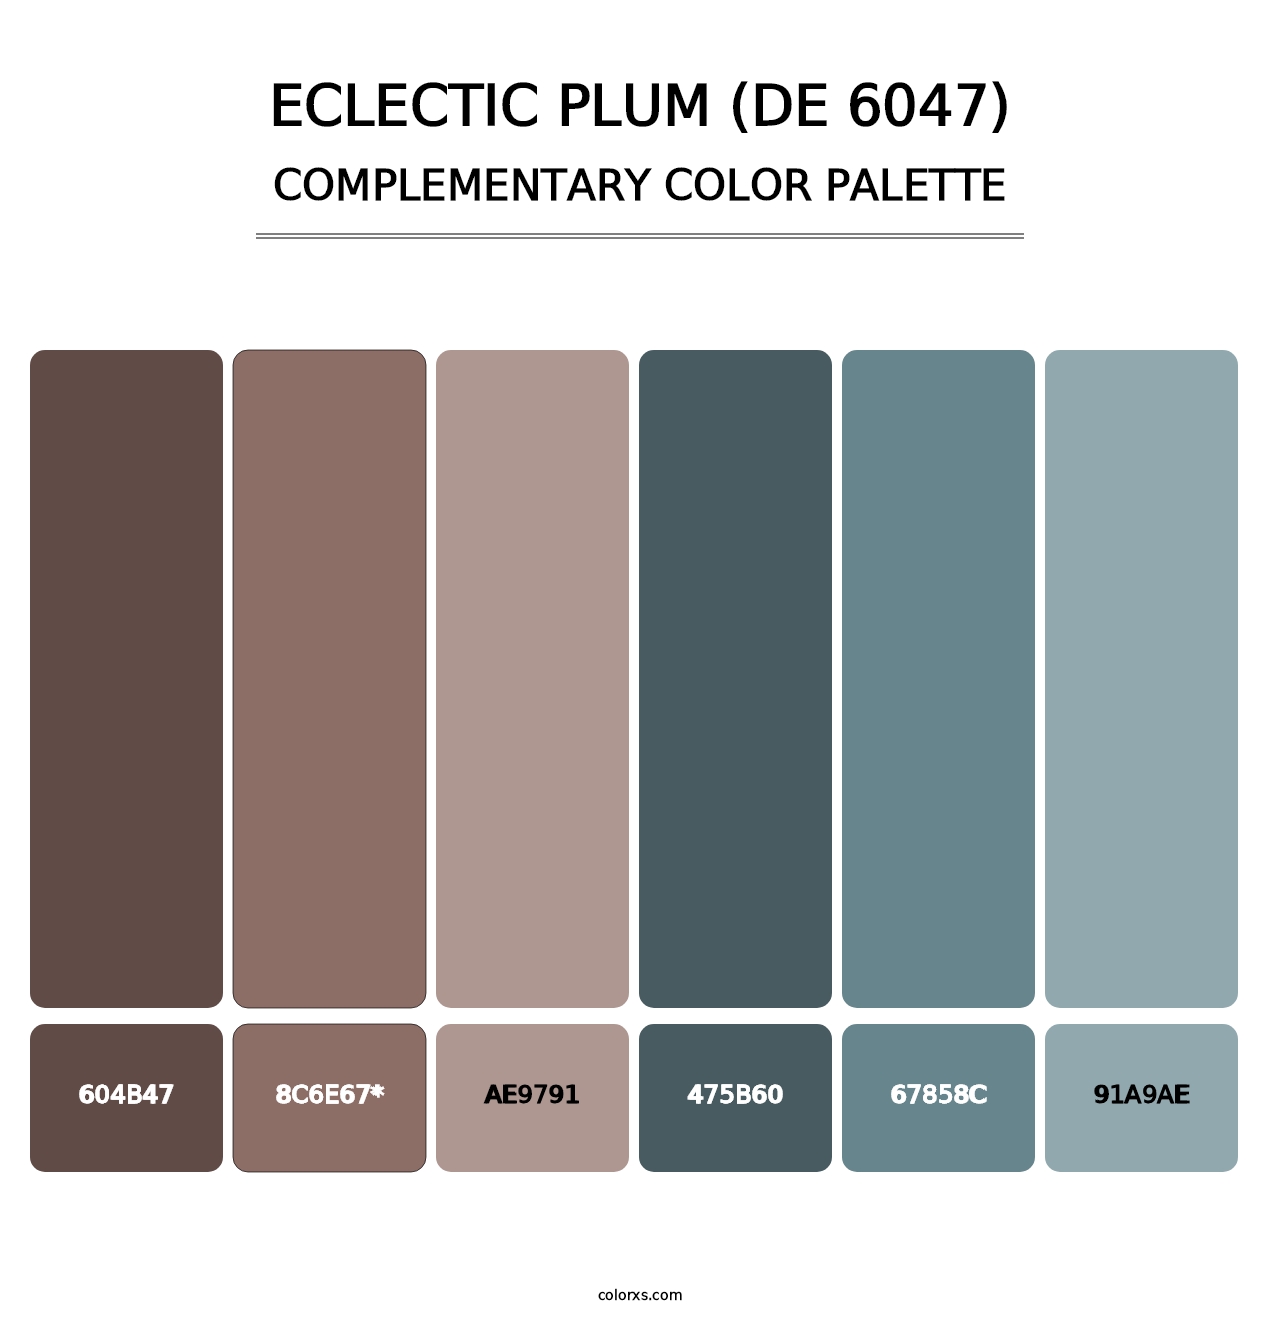 Eclectic Plum (DE 6047) - Complementary Color Palette